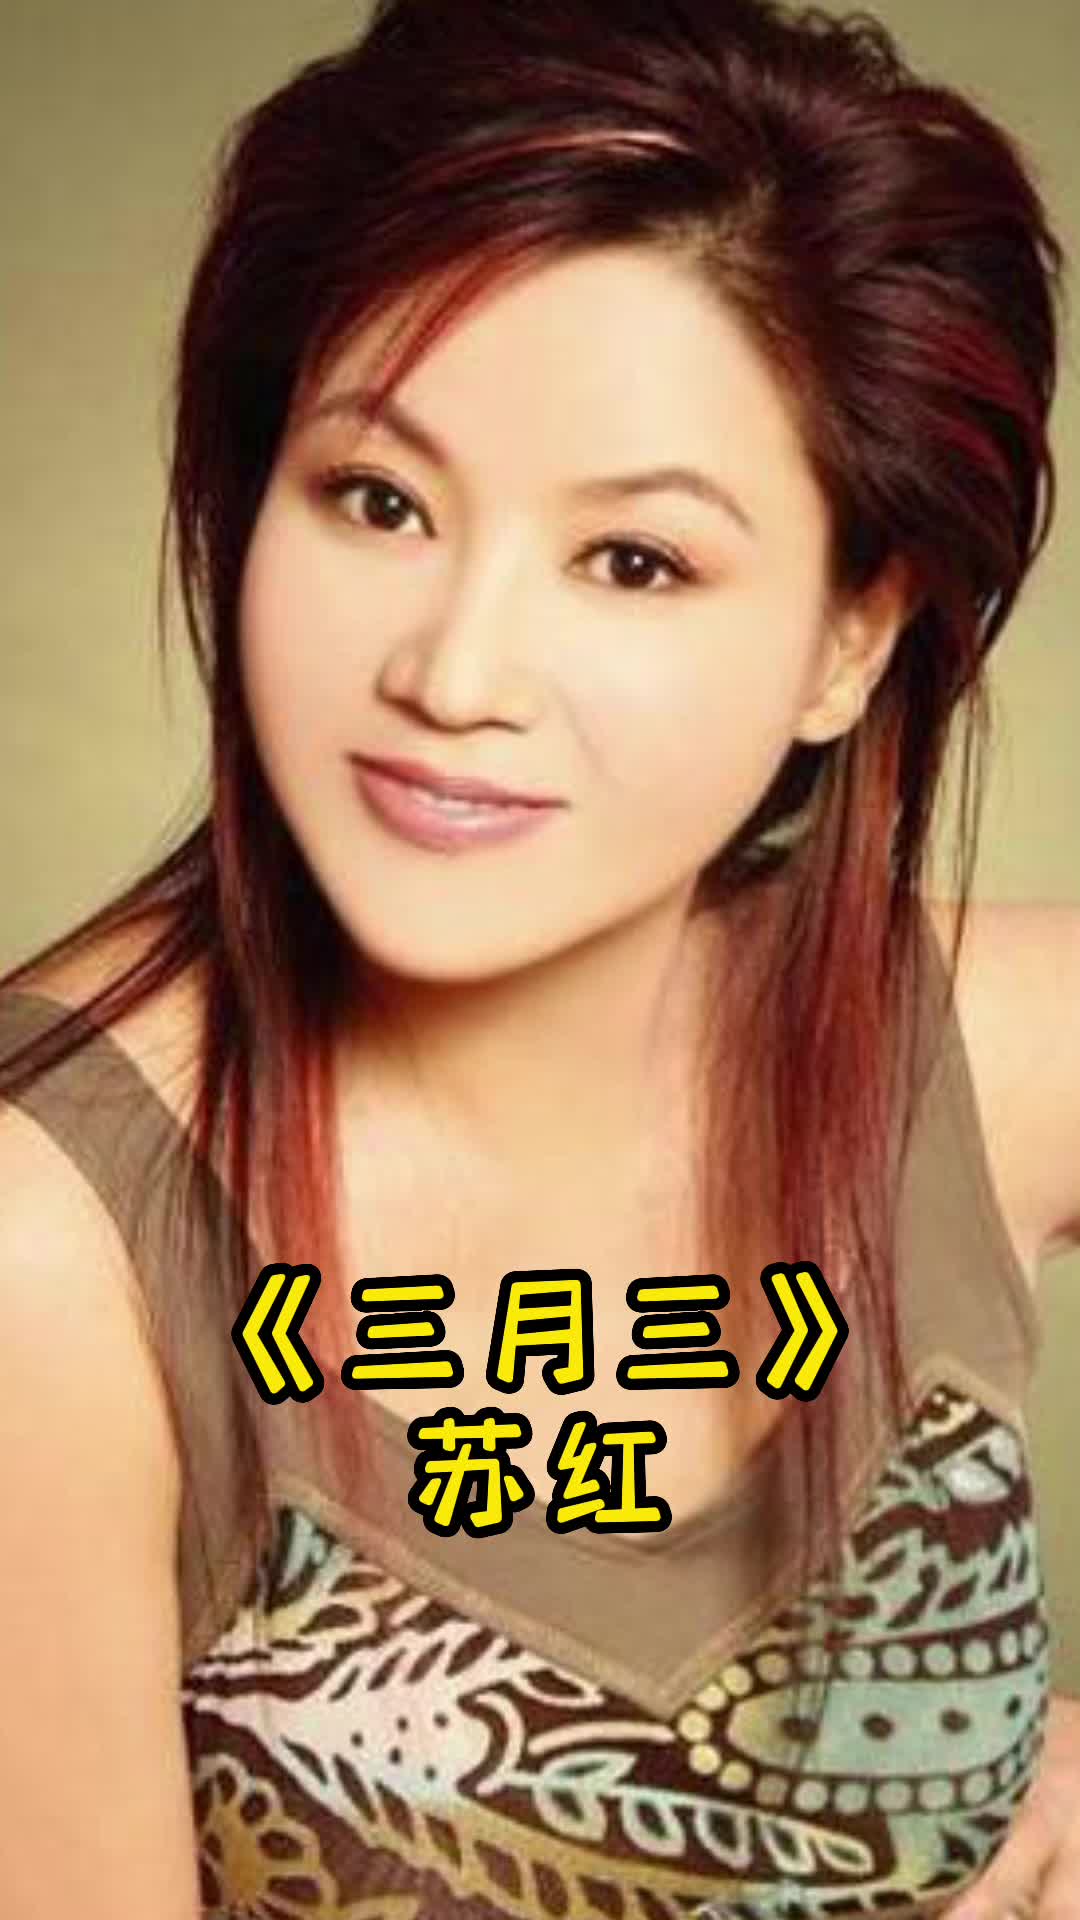 苏红歌手年龄图片